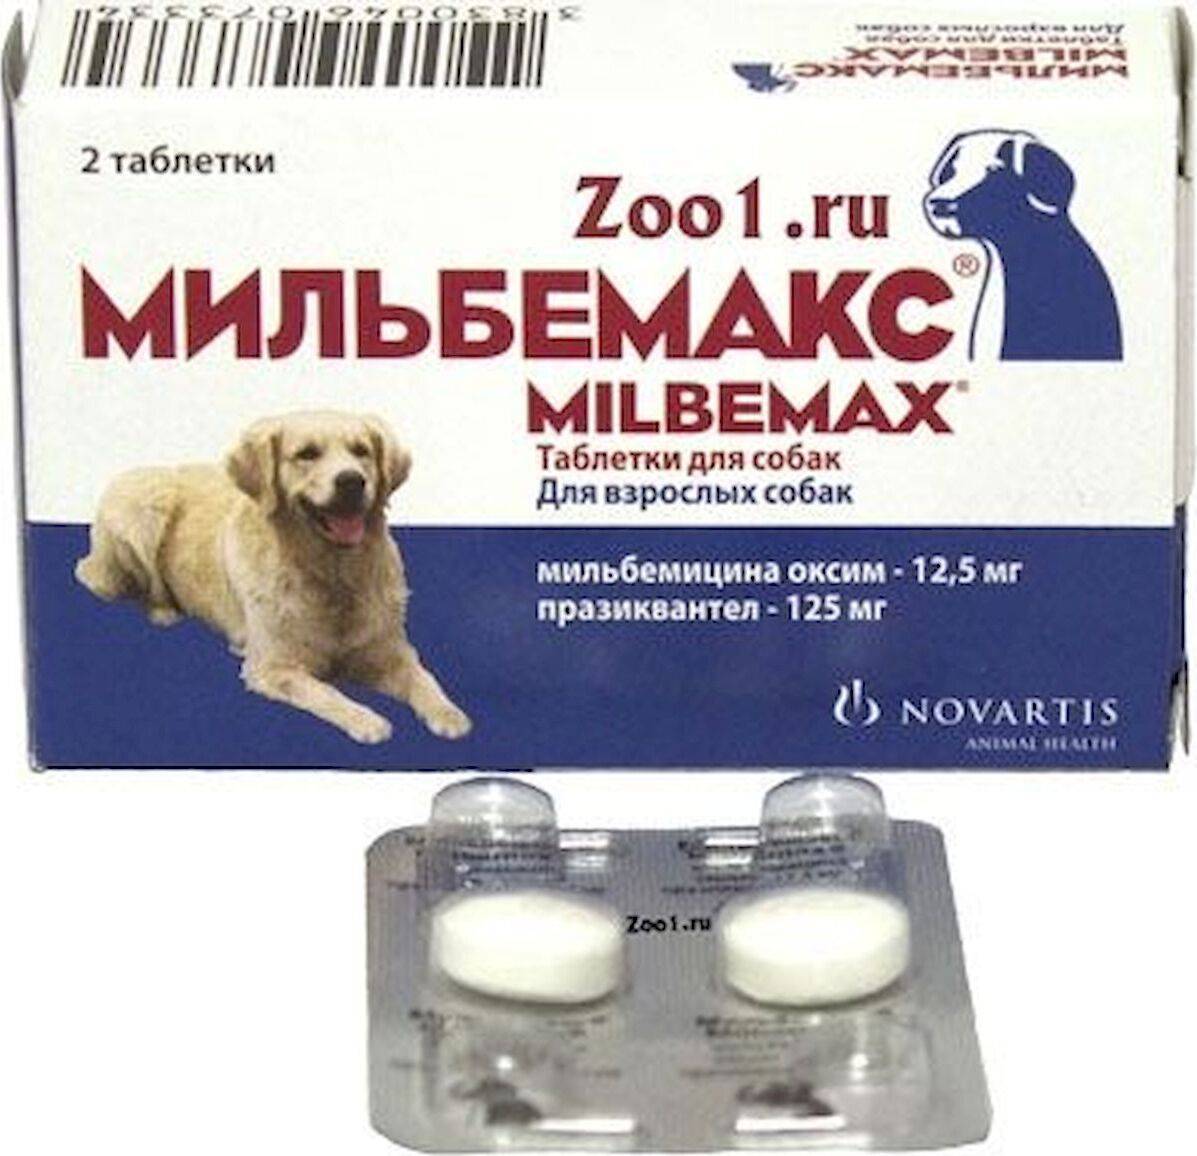 Мильбемакс для собак от глистов - инструкция по применению, цена и отзывы